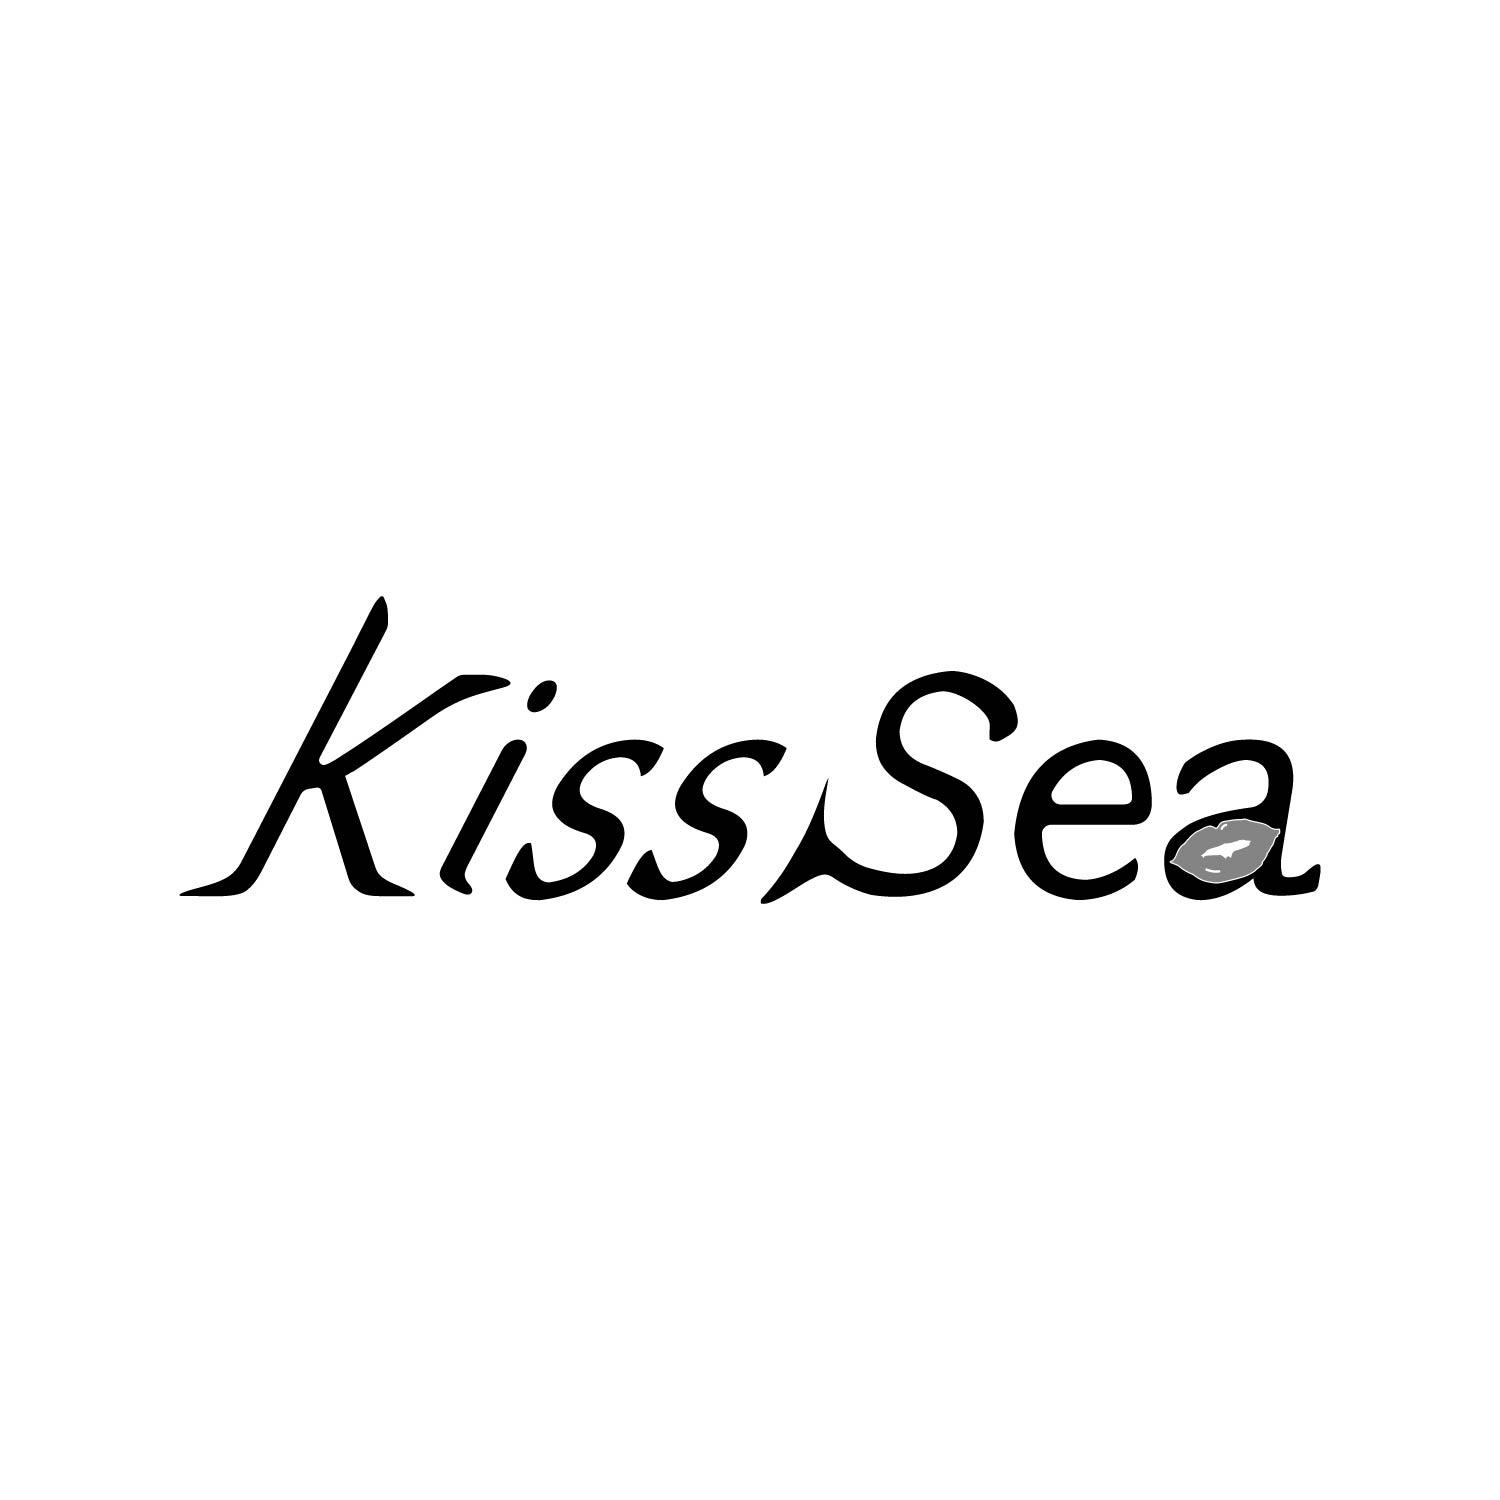 KISSSEA